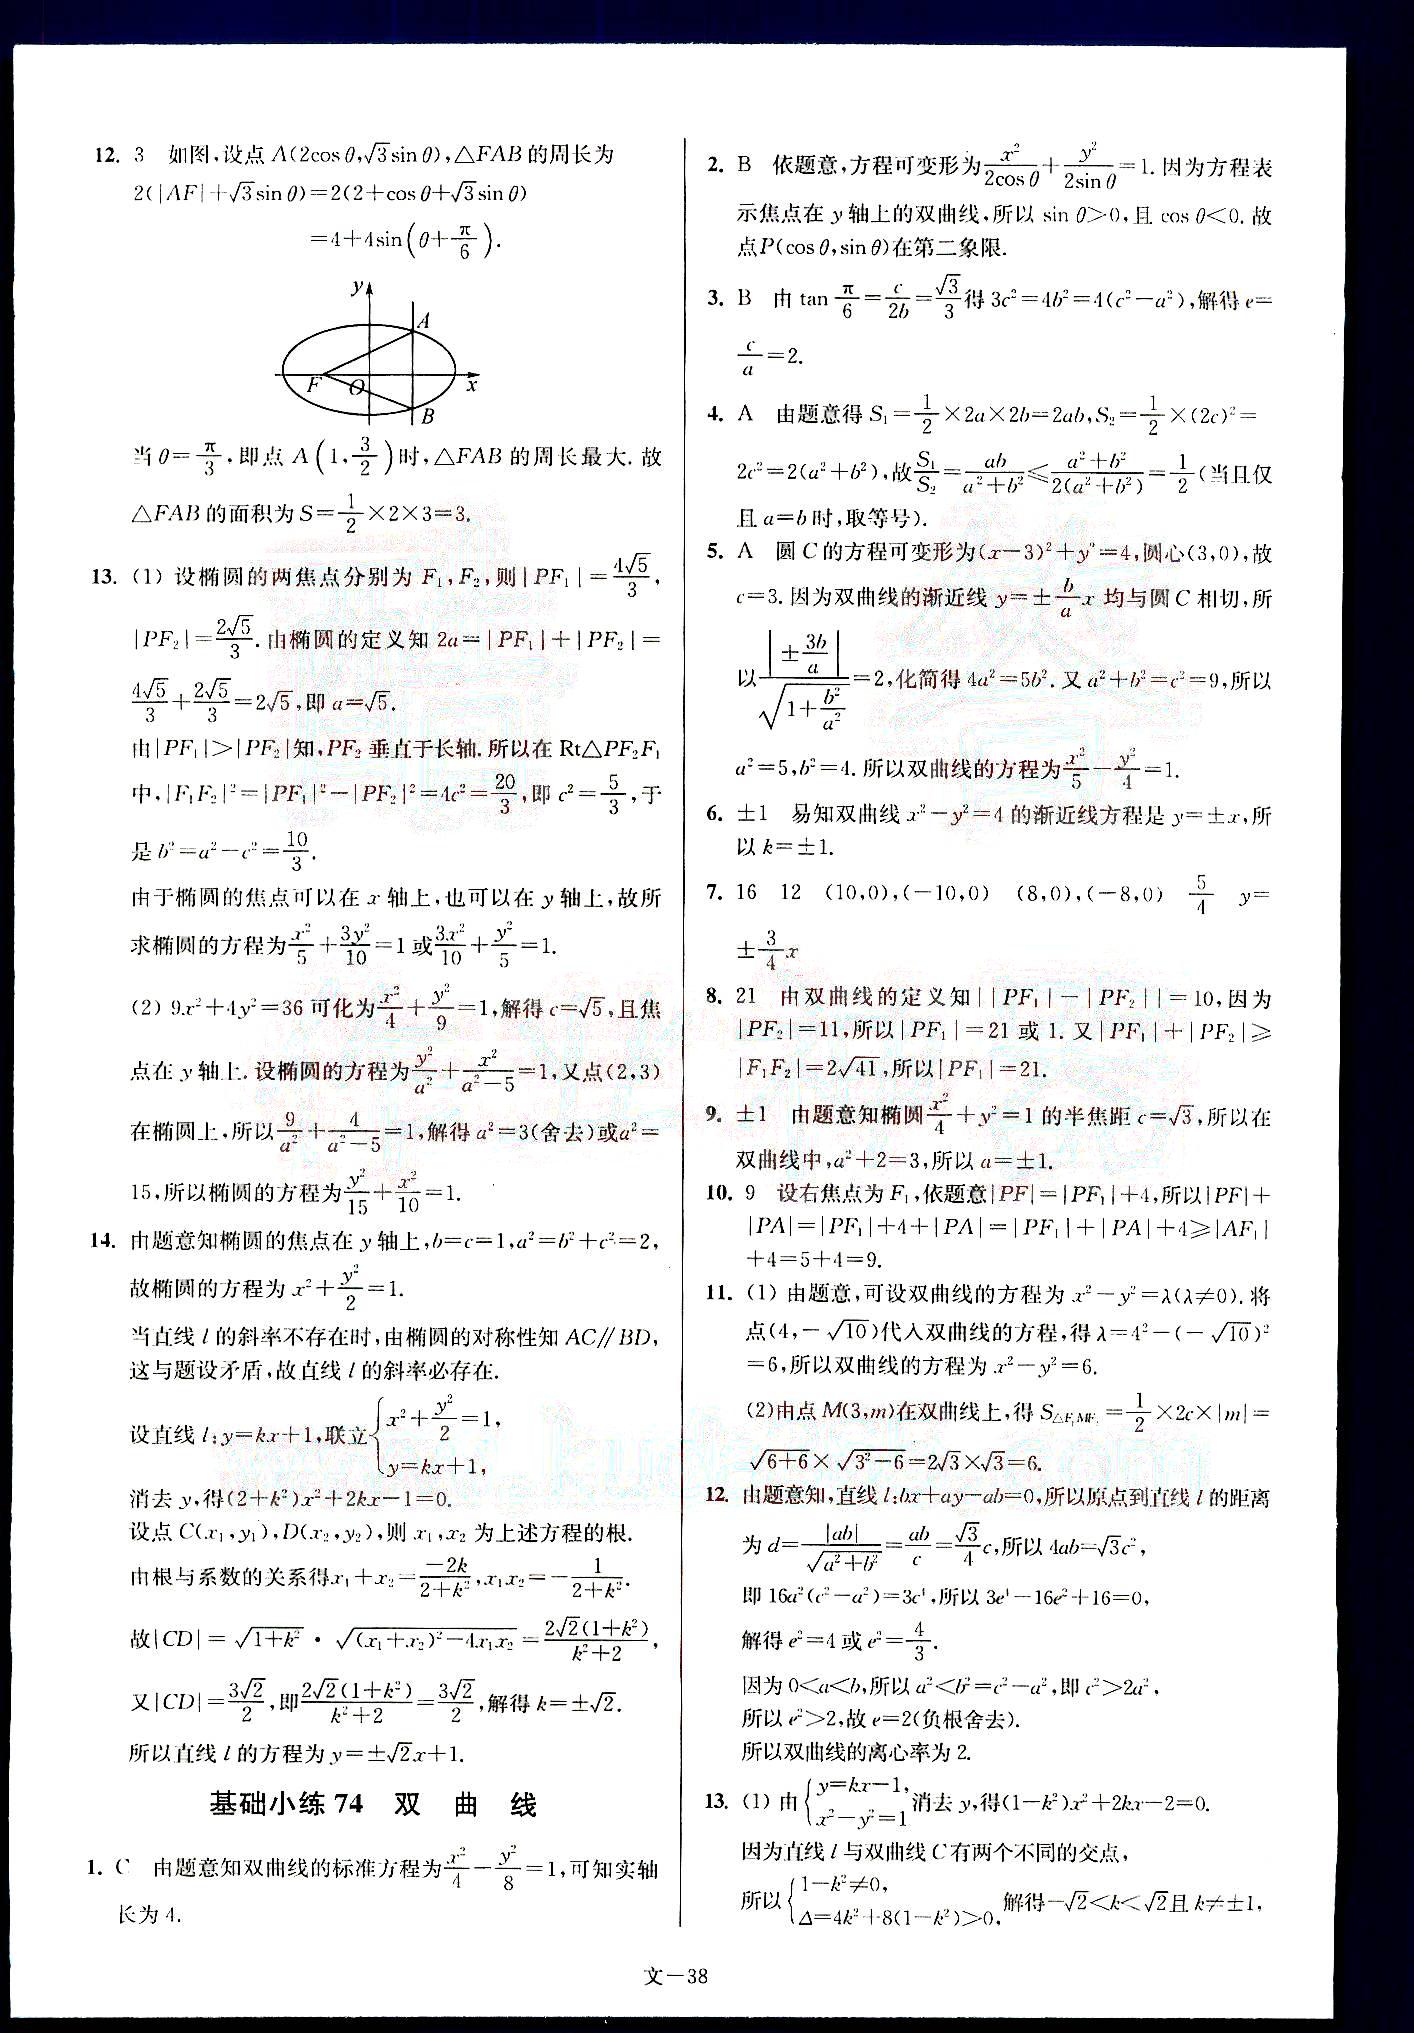 小题狂做-高考数学-文科-最基础篇南京大学出版社 第8部分 [3]